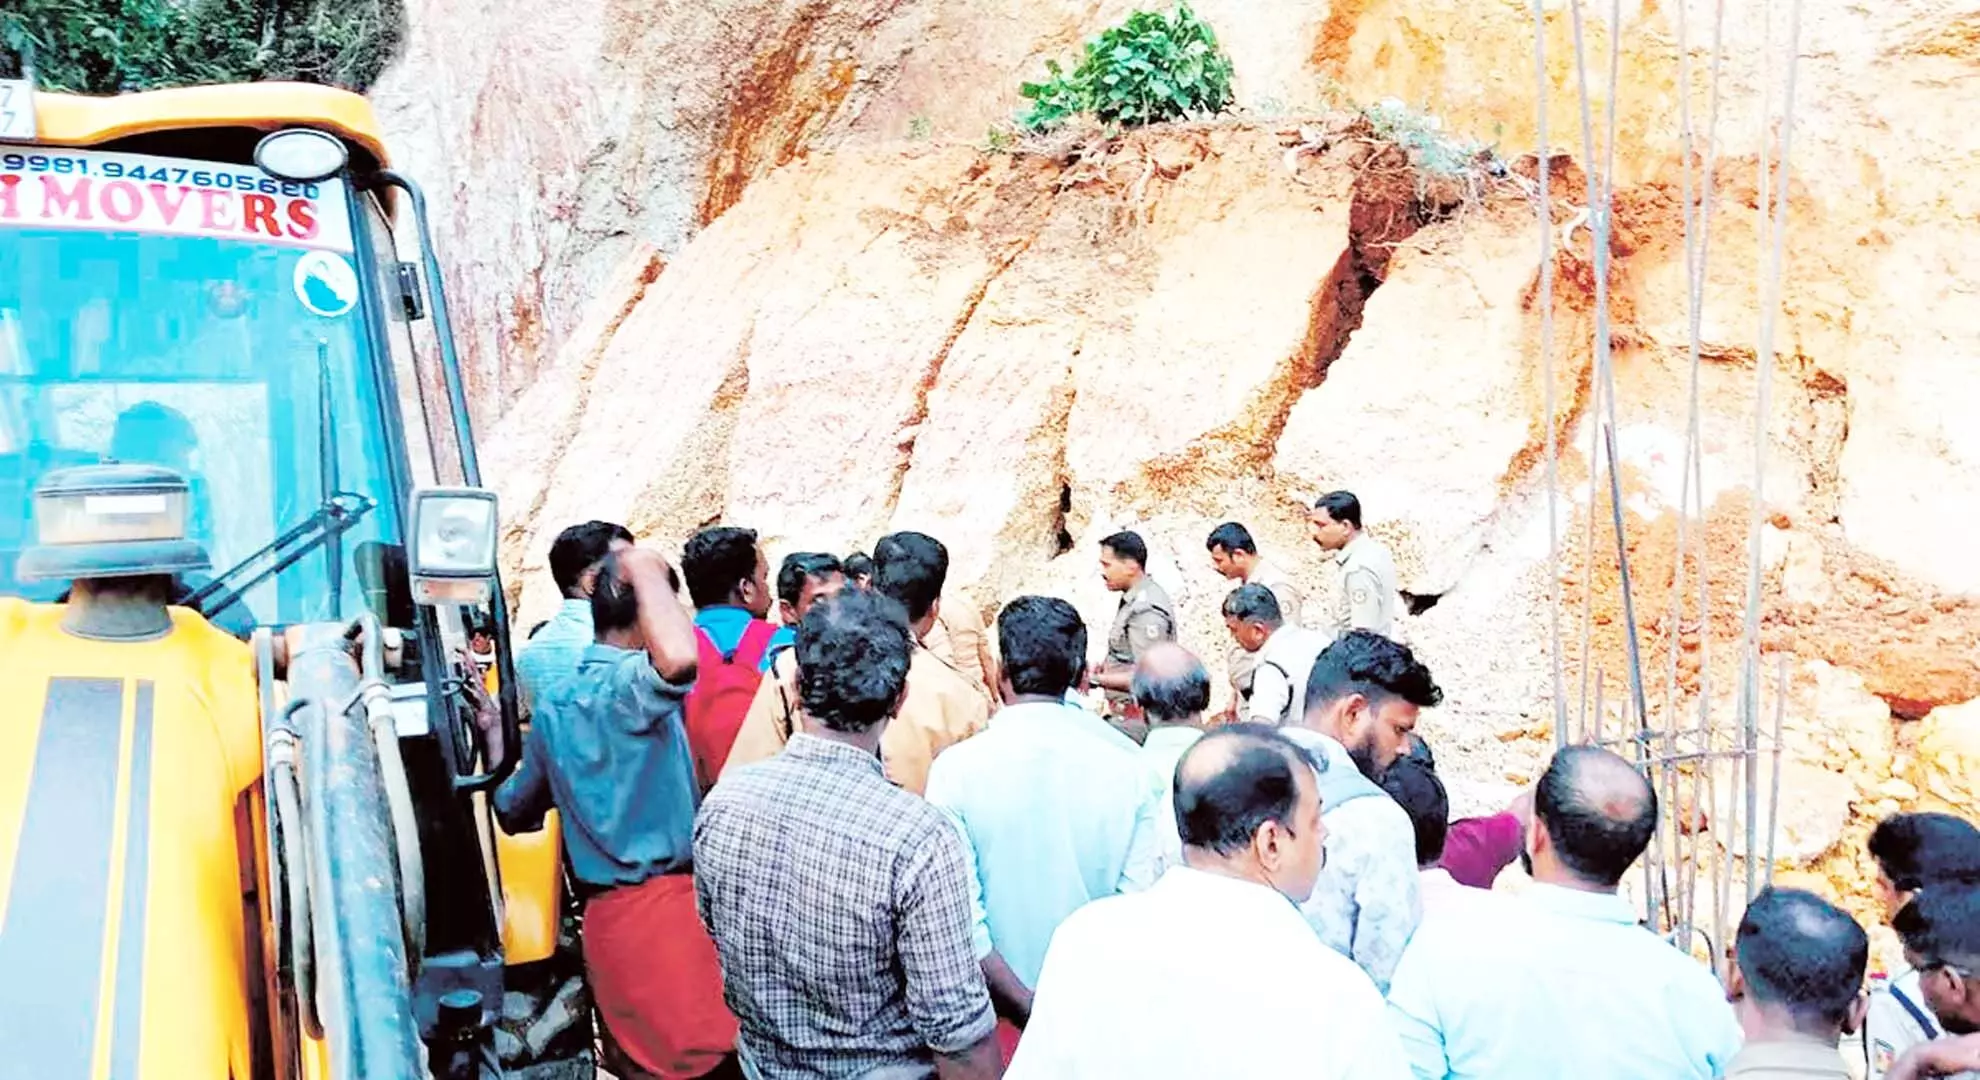 केरल में पिरावोम के पास निर्माण स्थल पर जमीन धंसने से पश्चिम बंगाल के 3 प्रवासी श्रमिकों की मौत हो गई